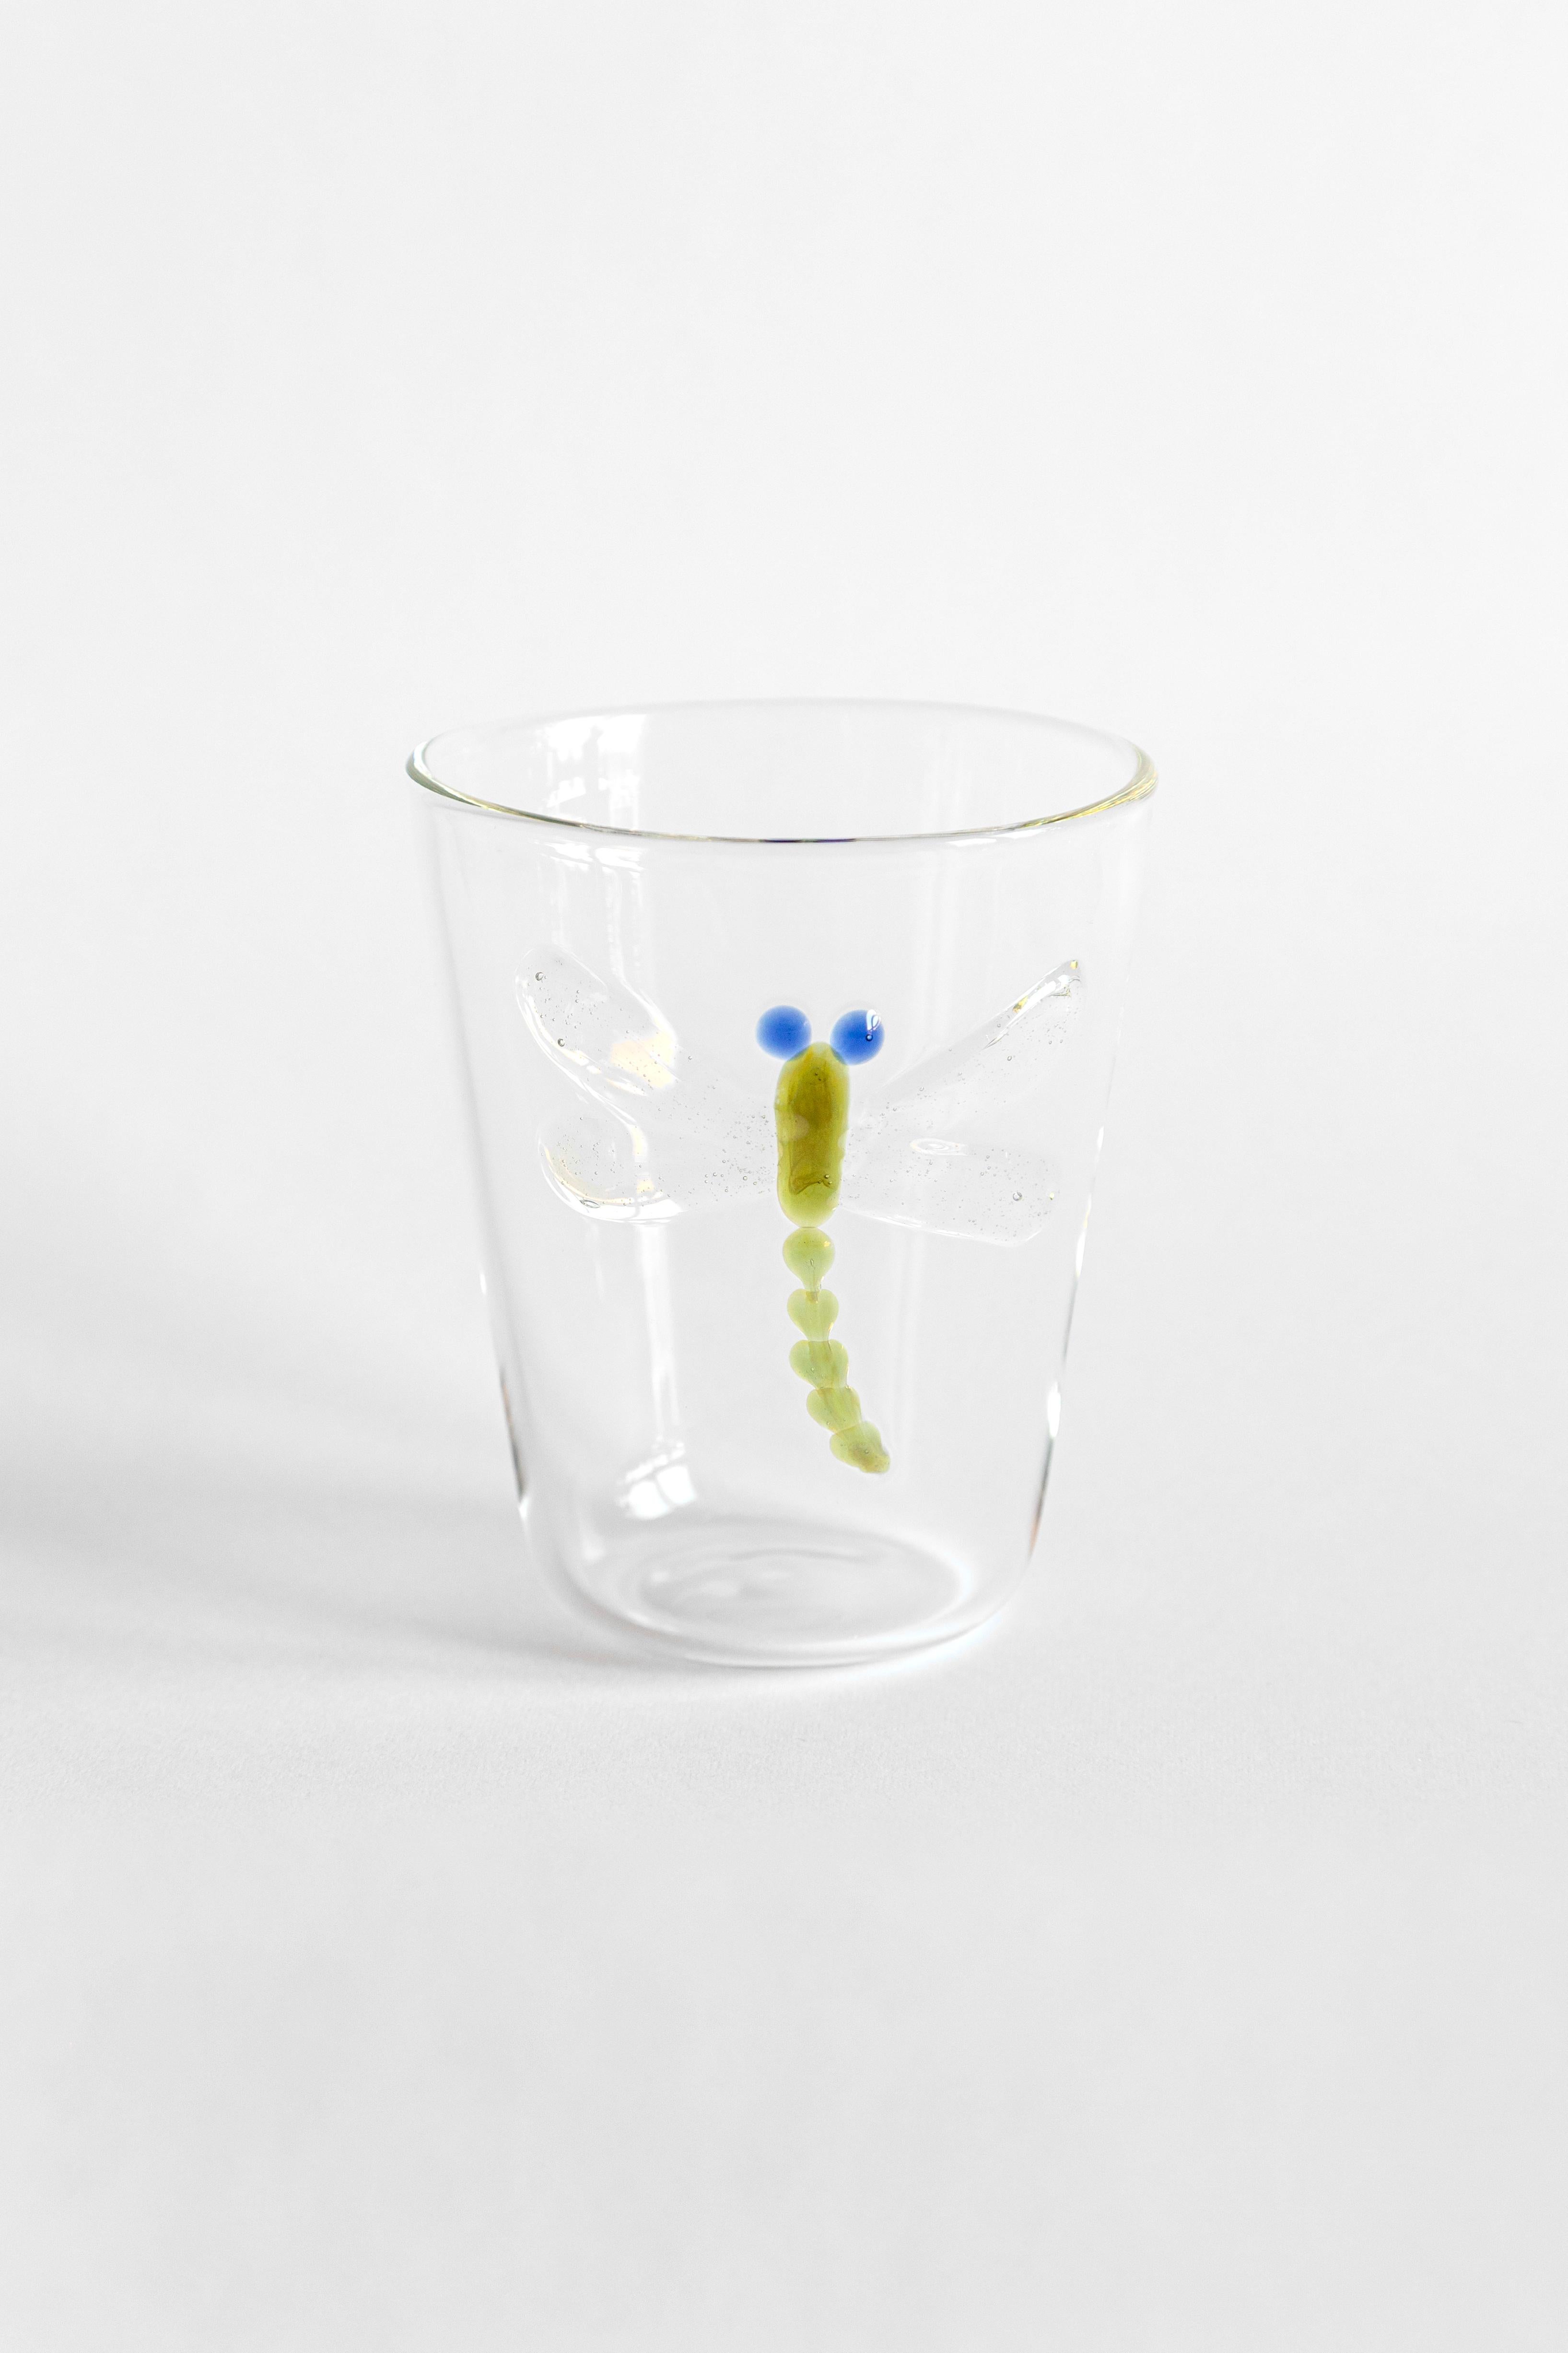 Cabinet de Curiosités, Contemporary Blown Water Glass with Decorative Details For Sale 2